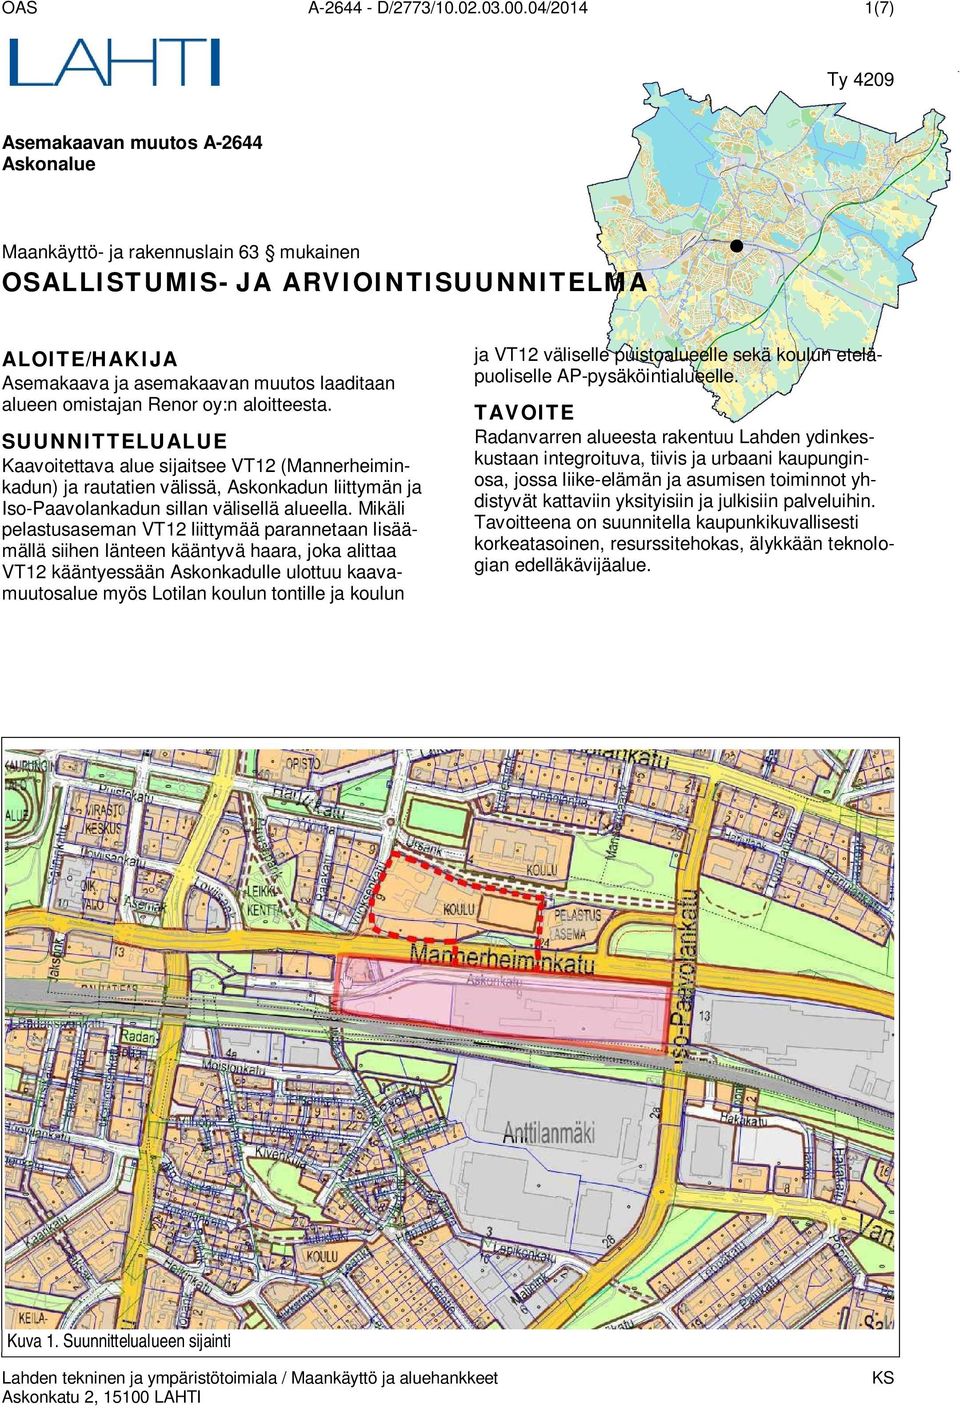 omistajan Renor oy:n aloitteesta. SUUNNITTELUALUE Kaavoitettava alue sijaitsee VT12 (Mannerheiminkadun) ja rautatien välissä, Askonkadun liittymän ja Iso-Paavolankadun sillan välisellä alueella.